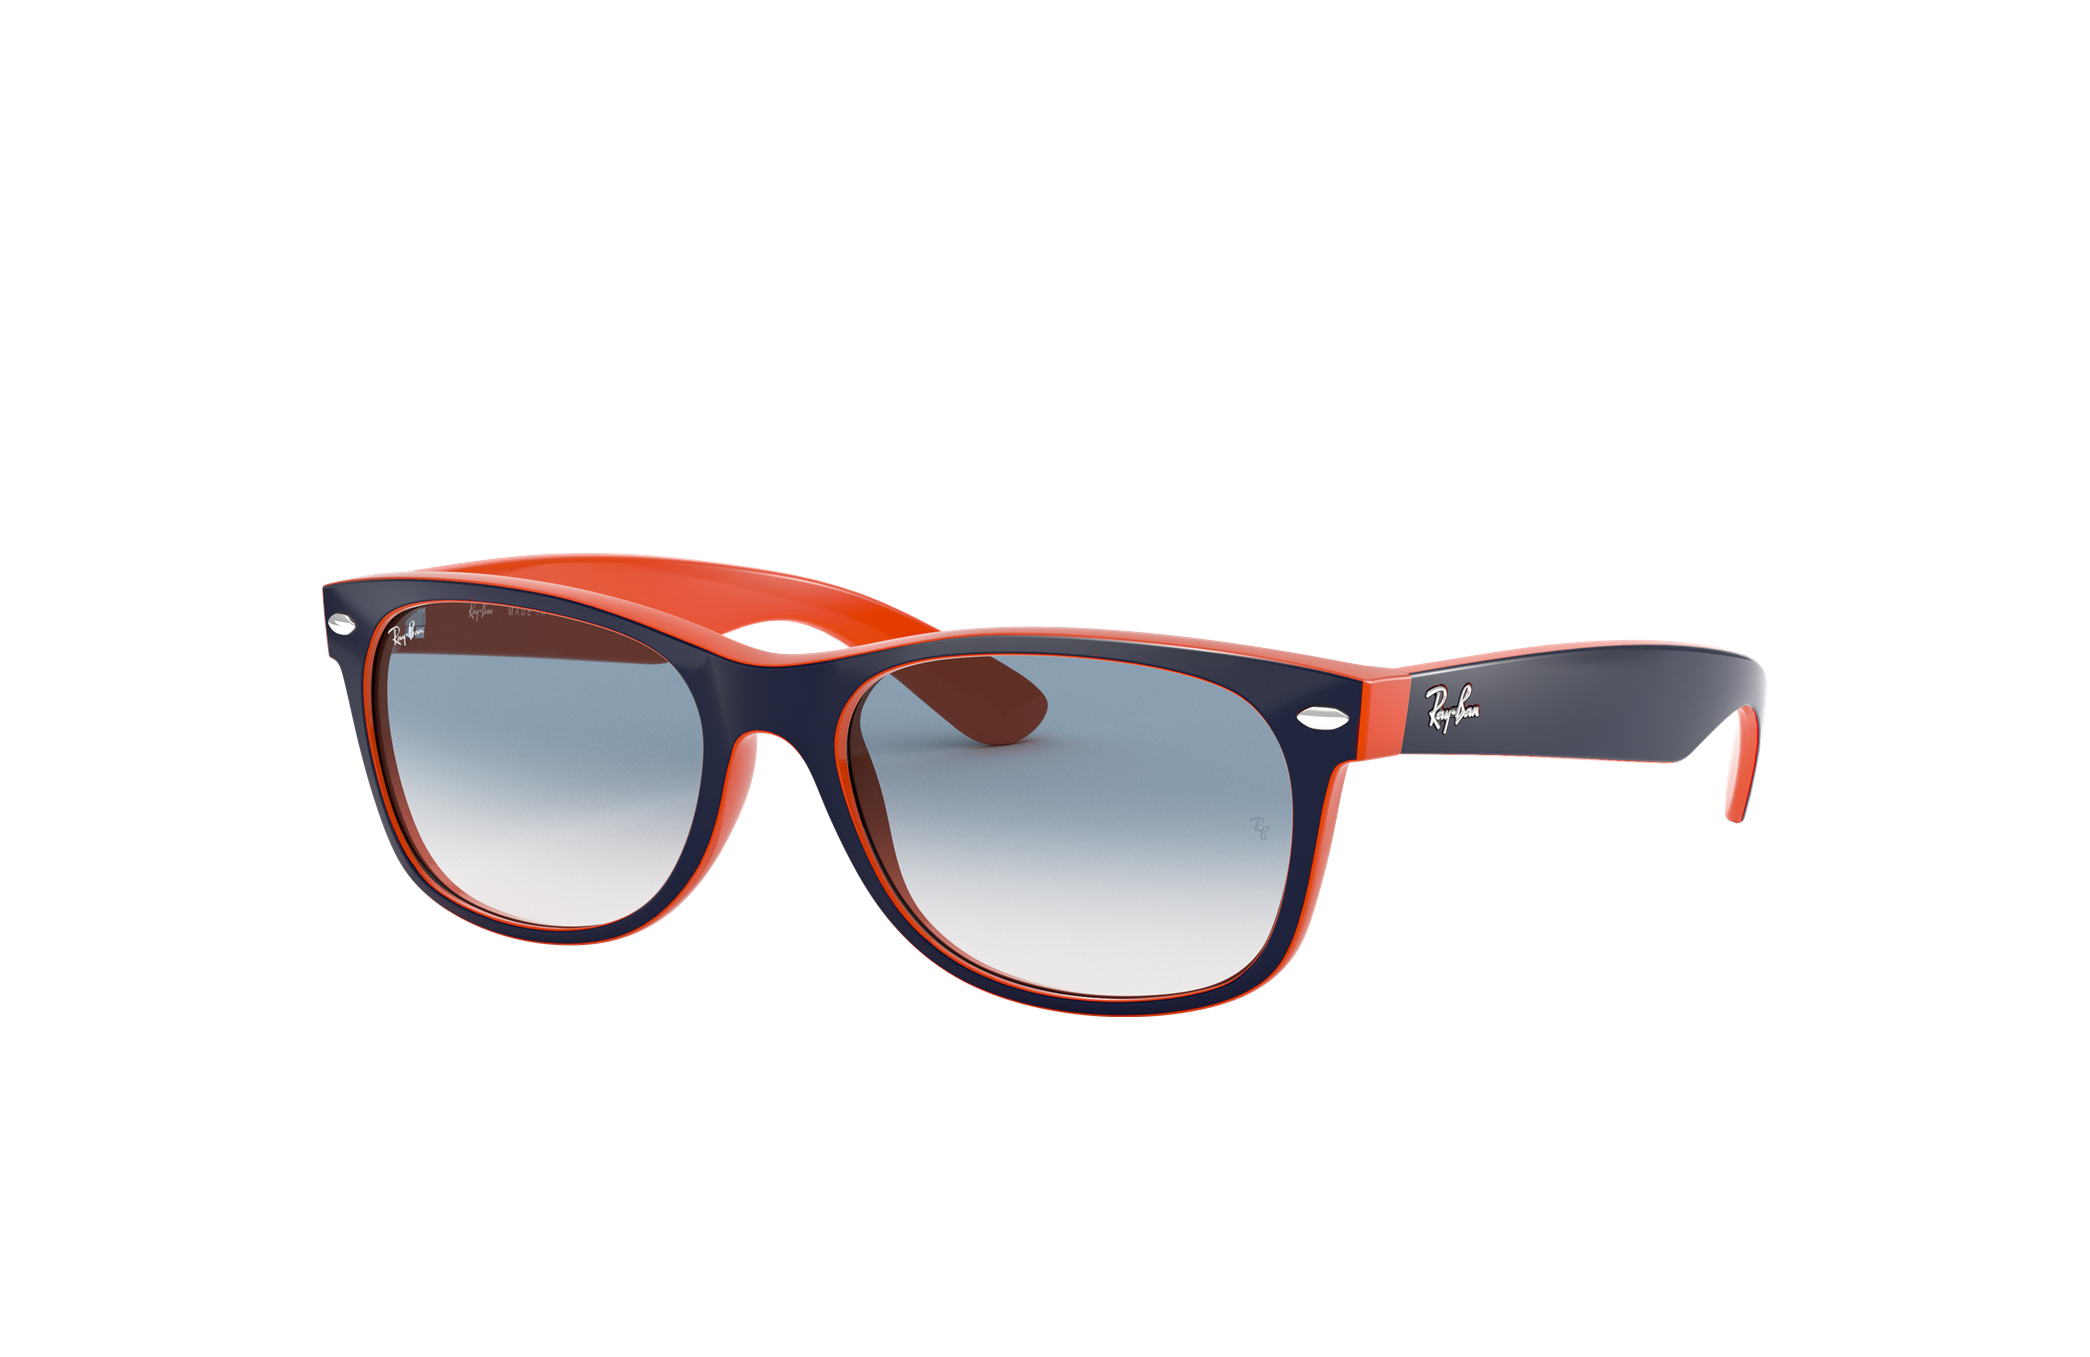 Women Fashion Big Sunglasses | Women Oversized Sunglasses | Orange  Accessories Women - Sunglasses - Aliexpress